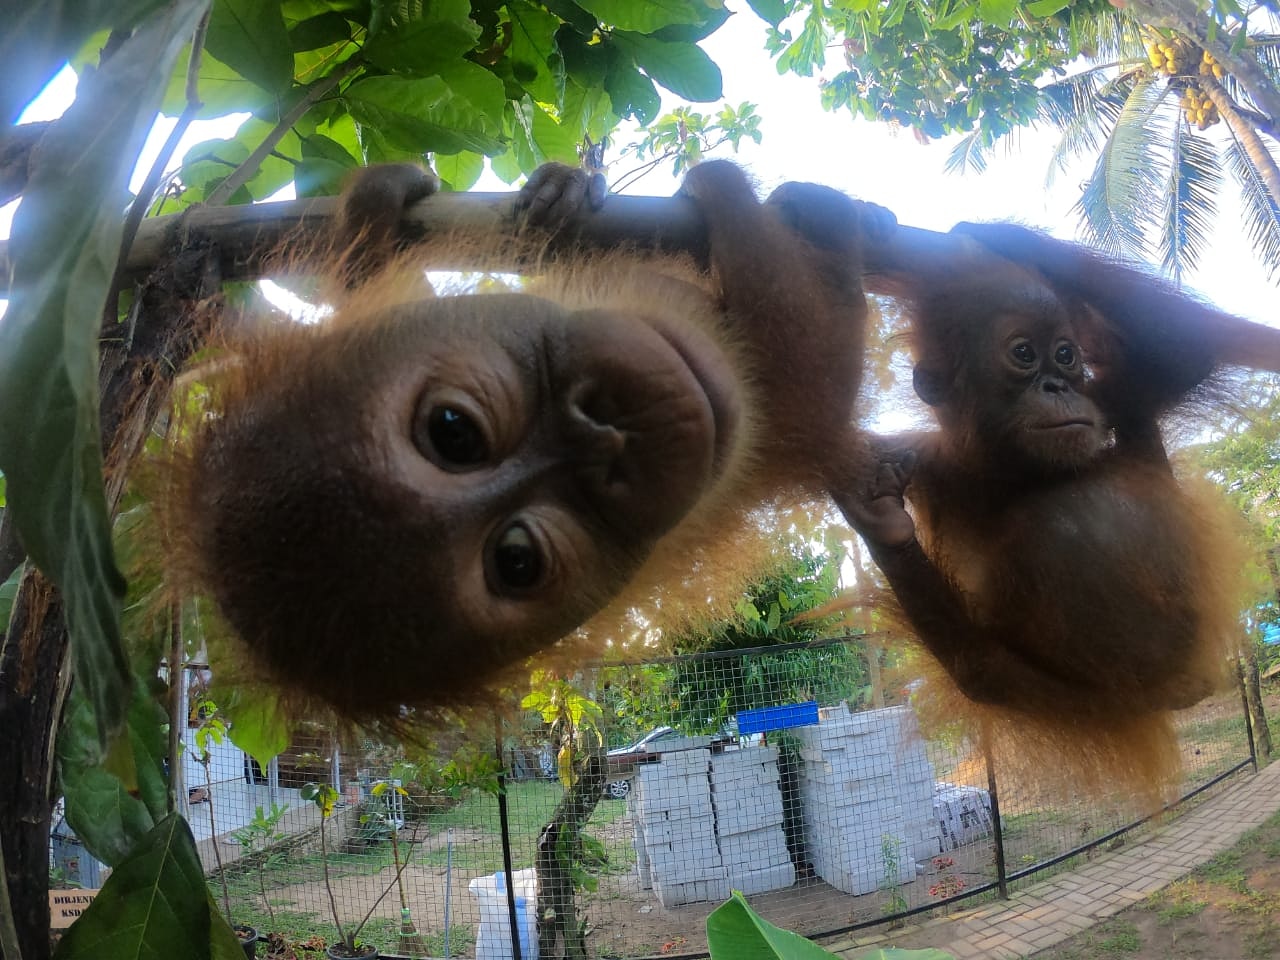 orang-oetans Sumatra